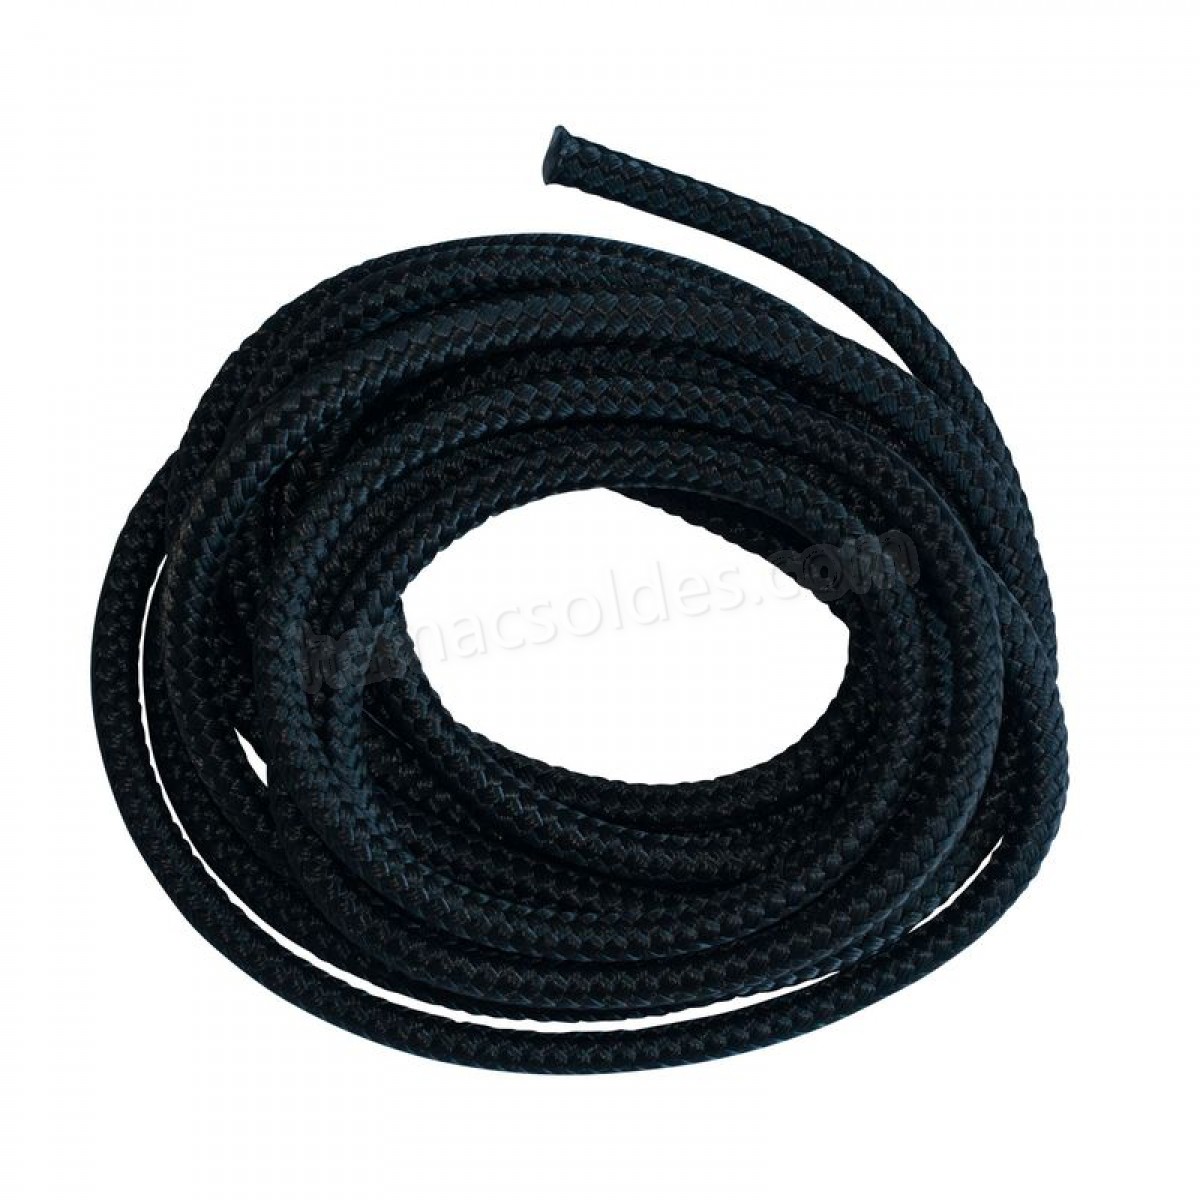 Soldes en ligne Extension Rope Black - Corde en polyester - Noir / gris - Soldes en ligne Extension Rope Black - Corde en polyester - Noir / gris